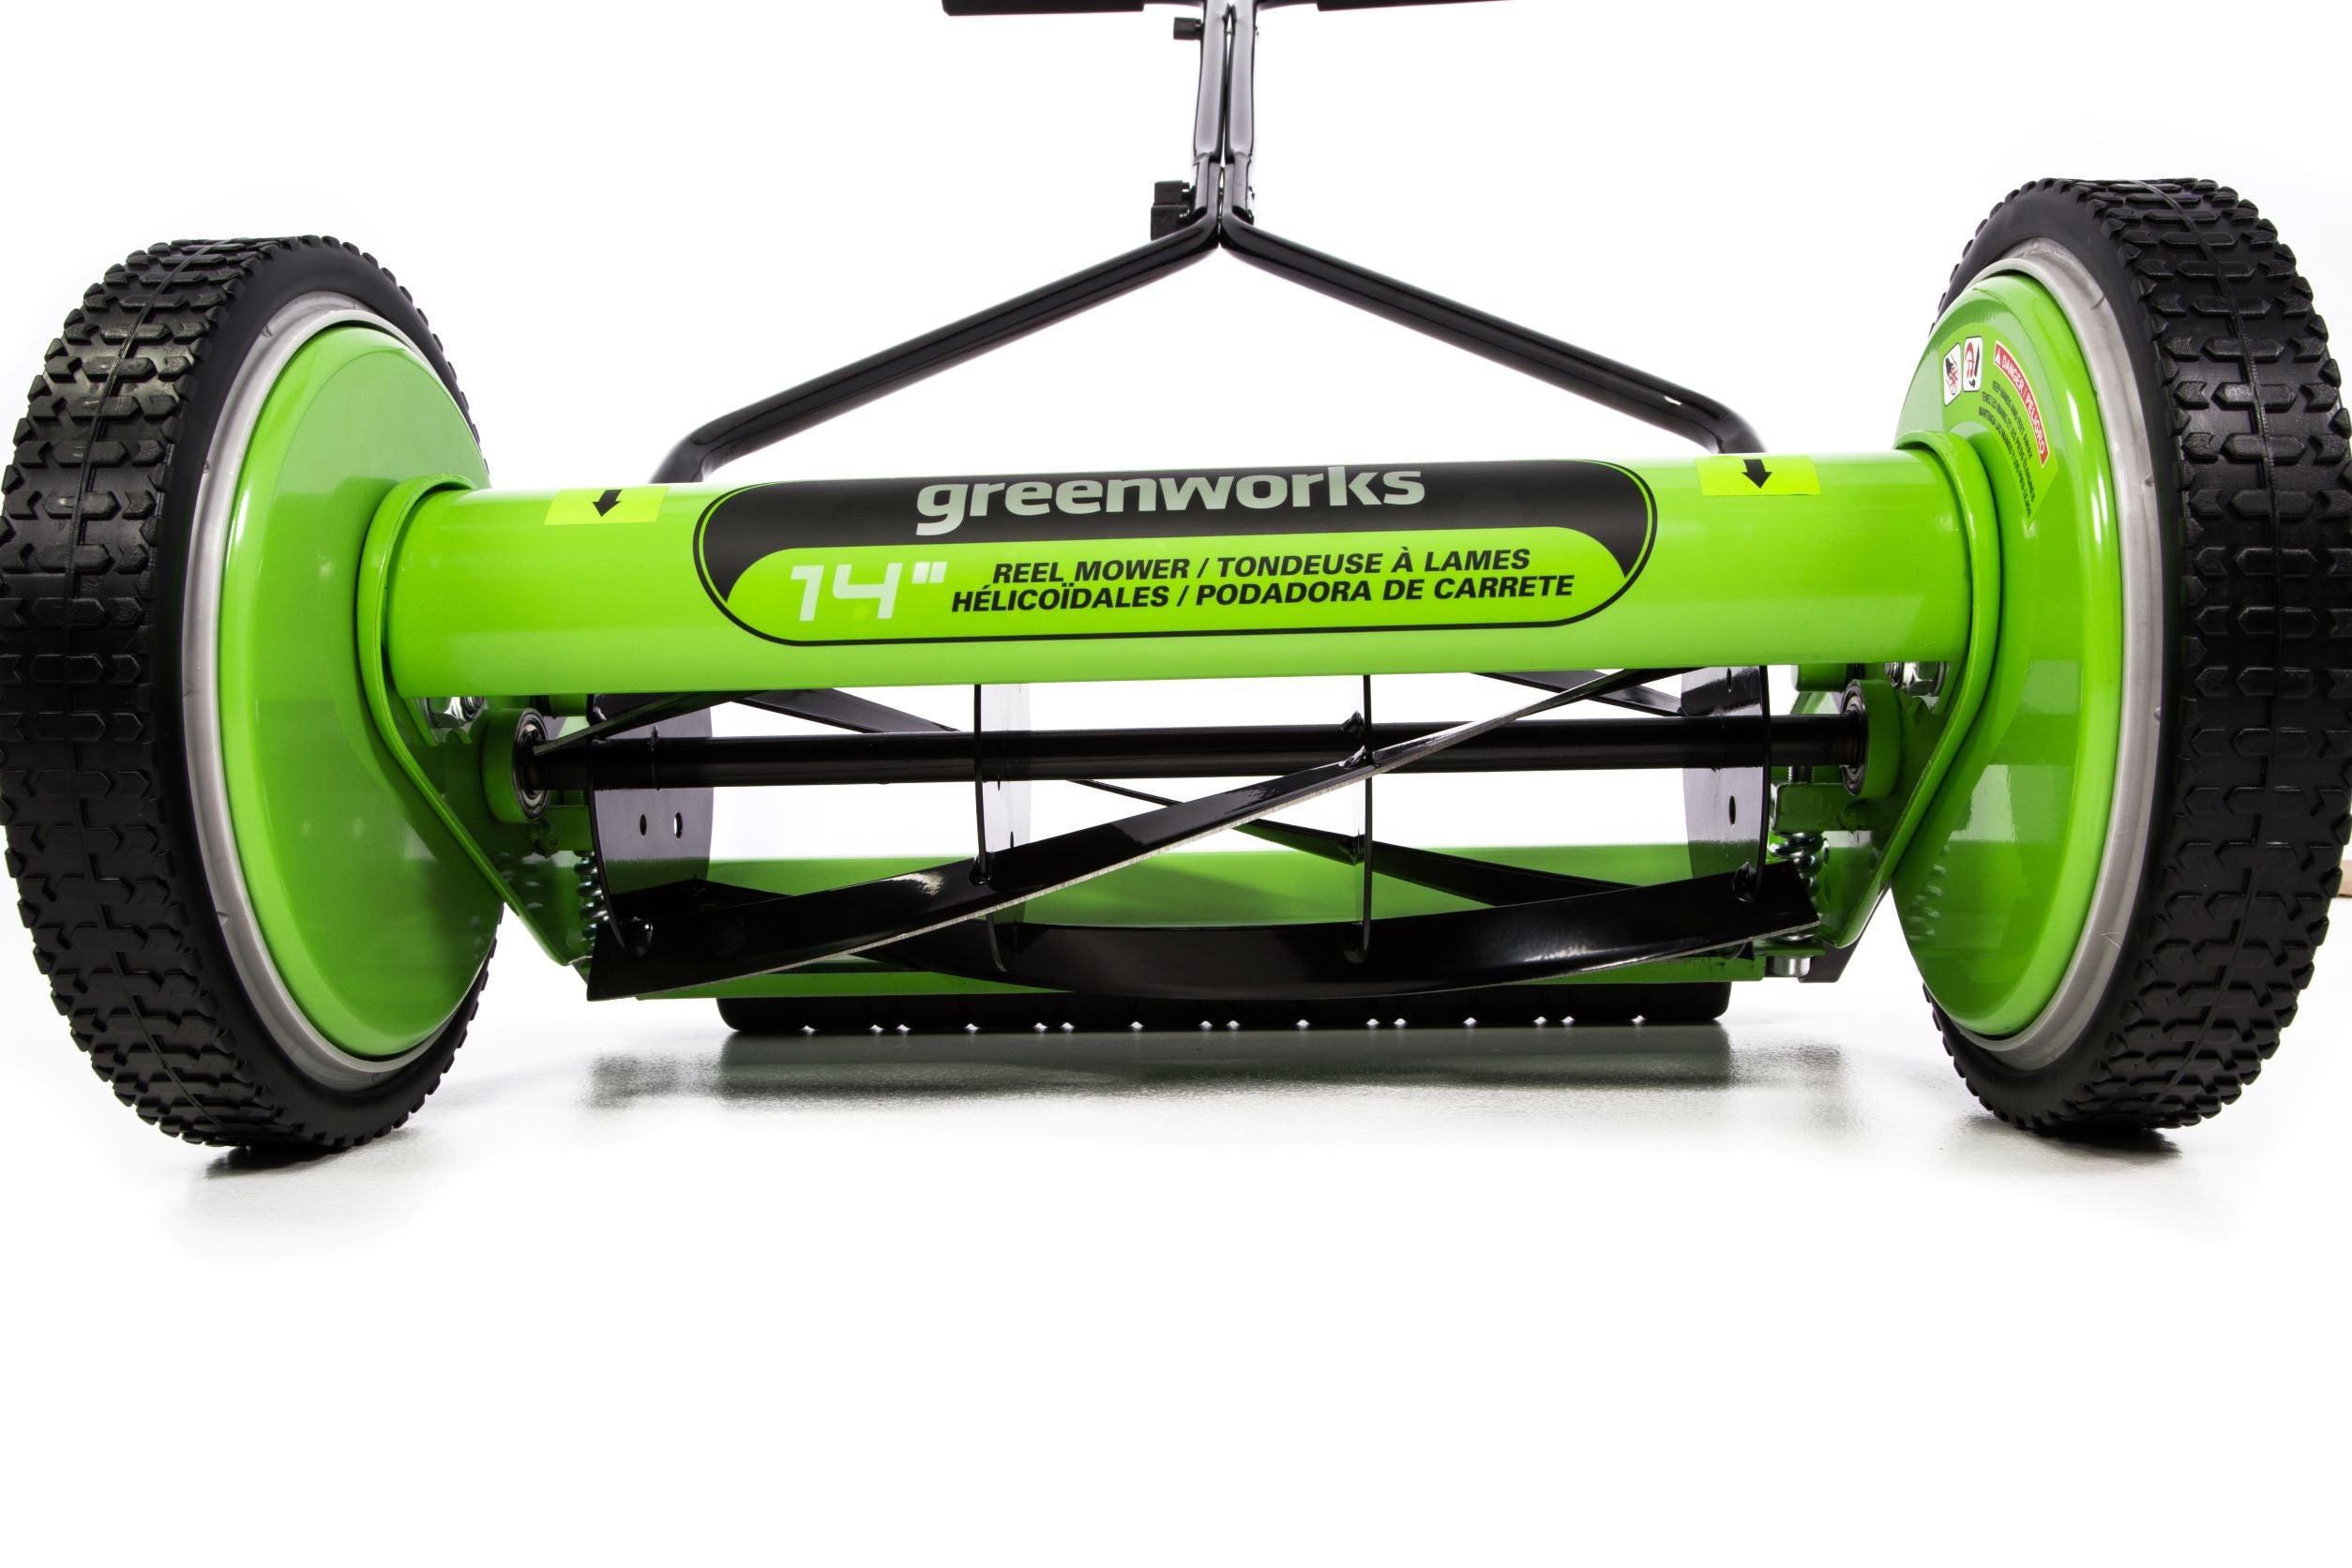 14-Inch Reel Lawn Mower